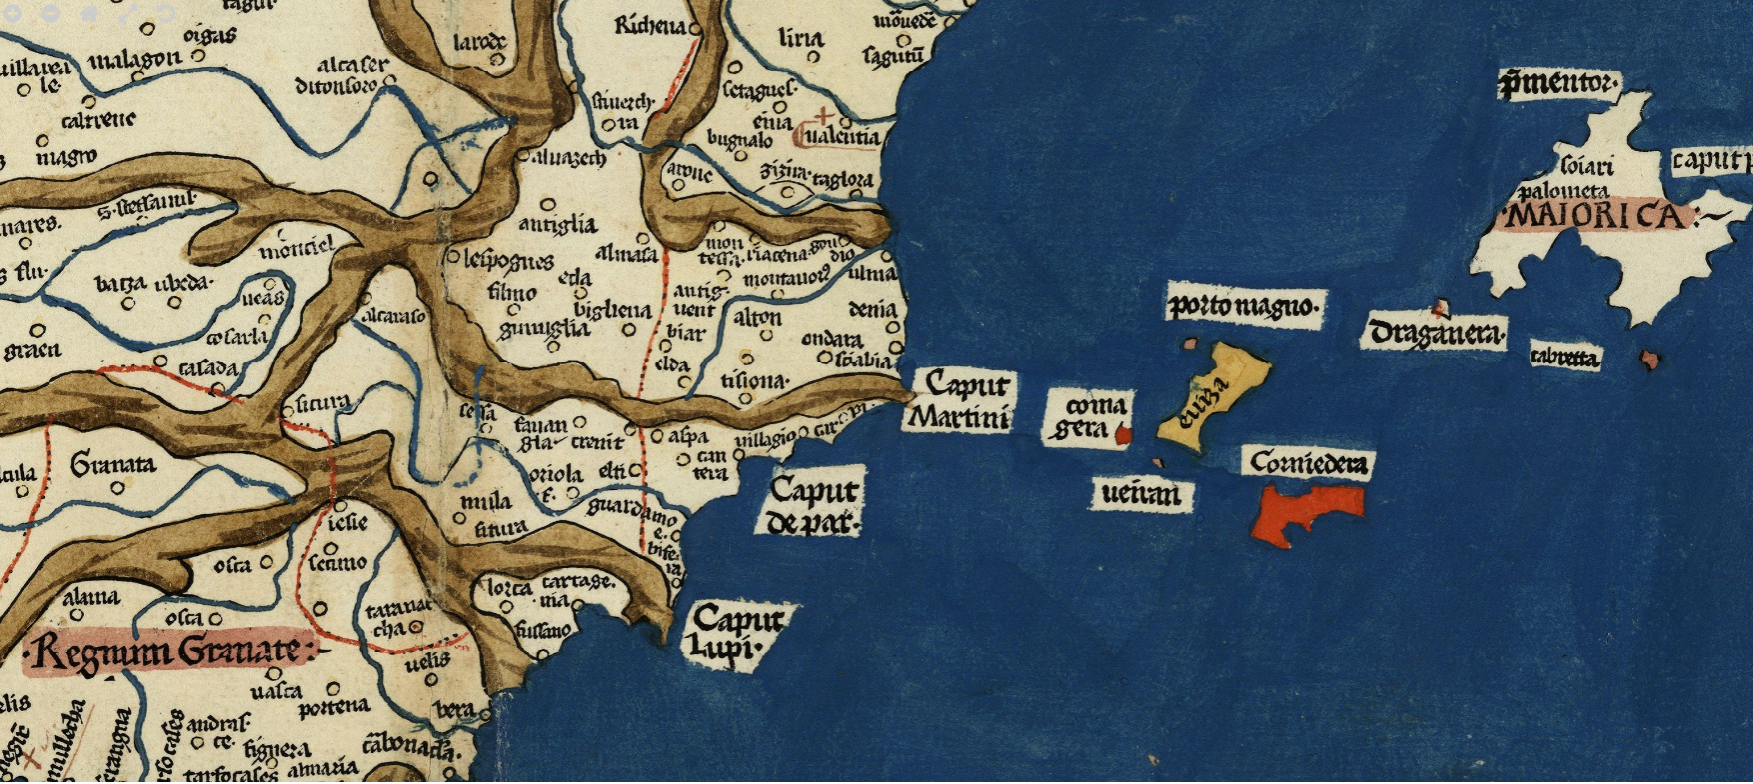 Mapa del cuadrante sur oriental de la península ibérica (1484). Fuente Cartoteca de Catalunya